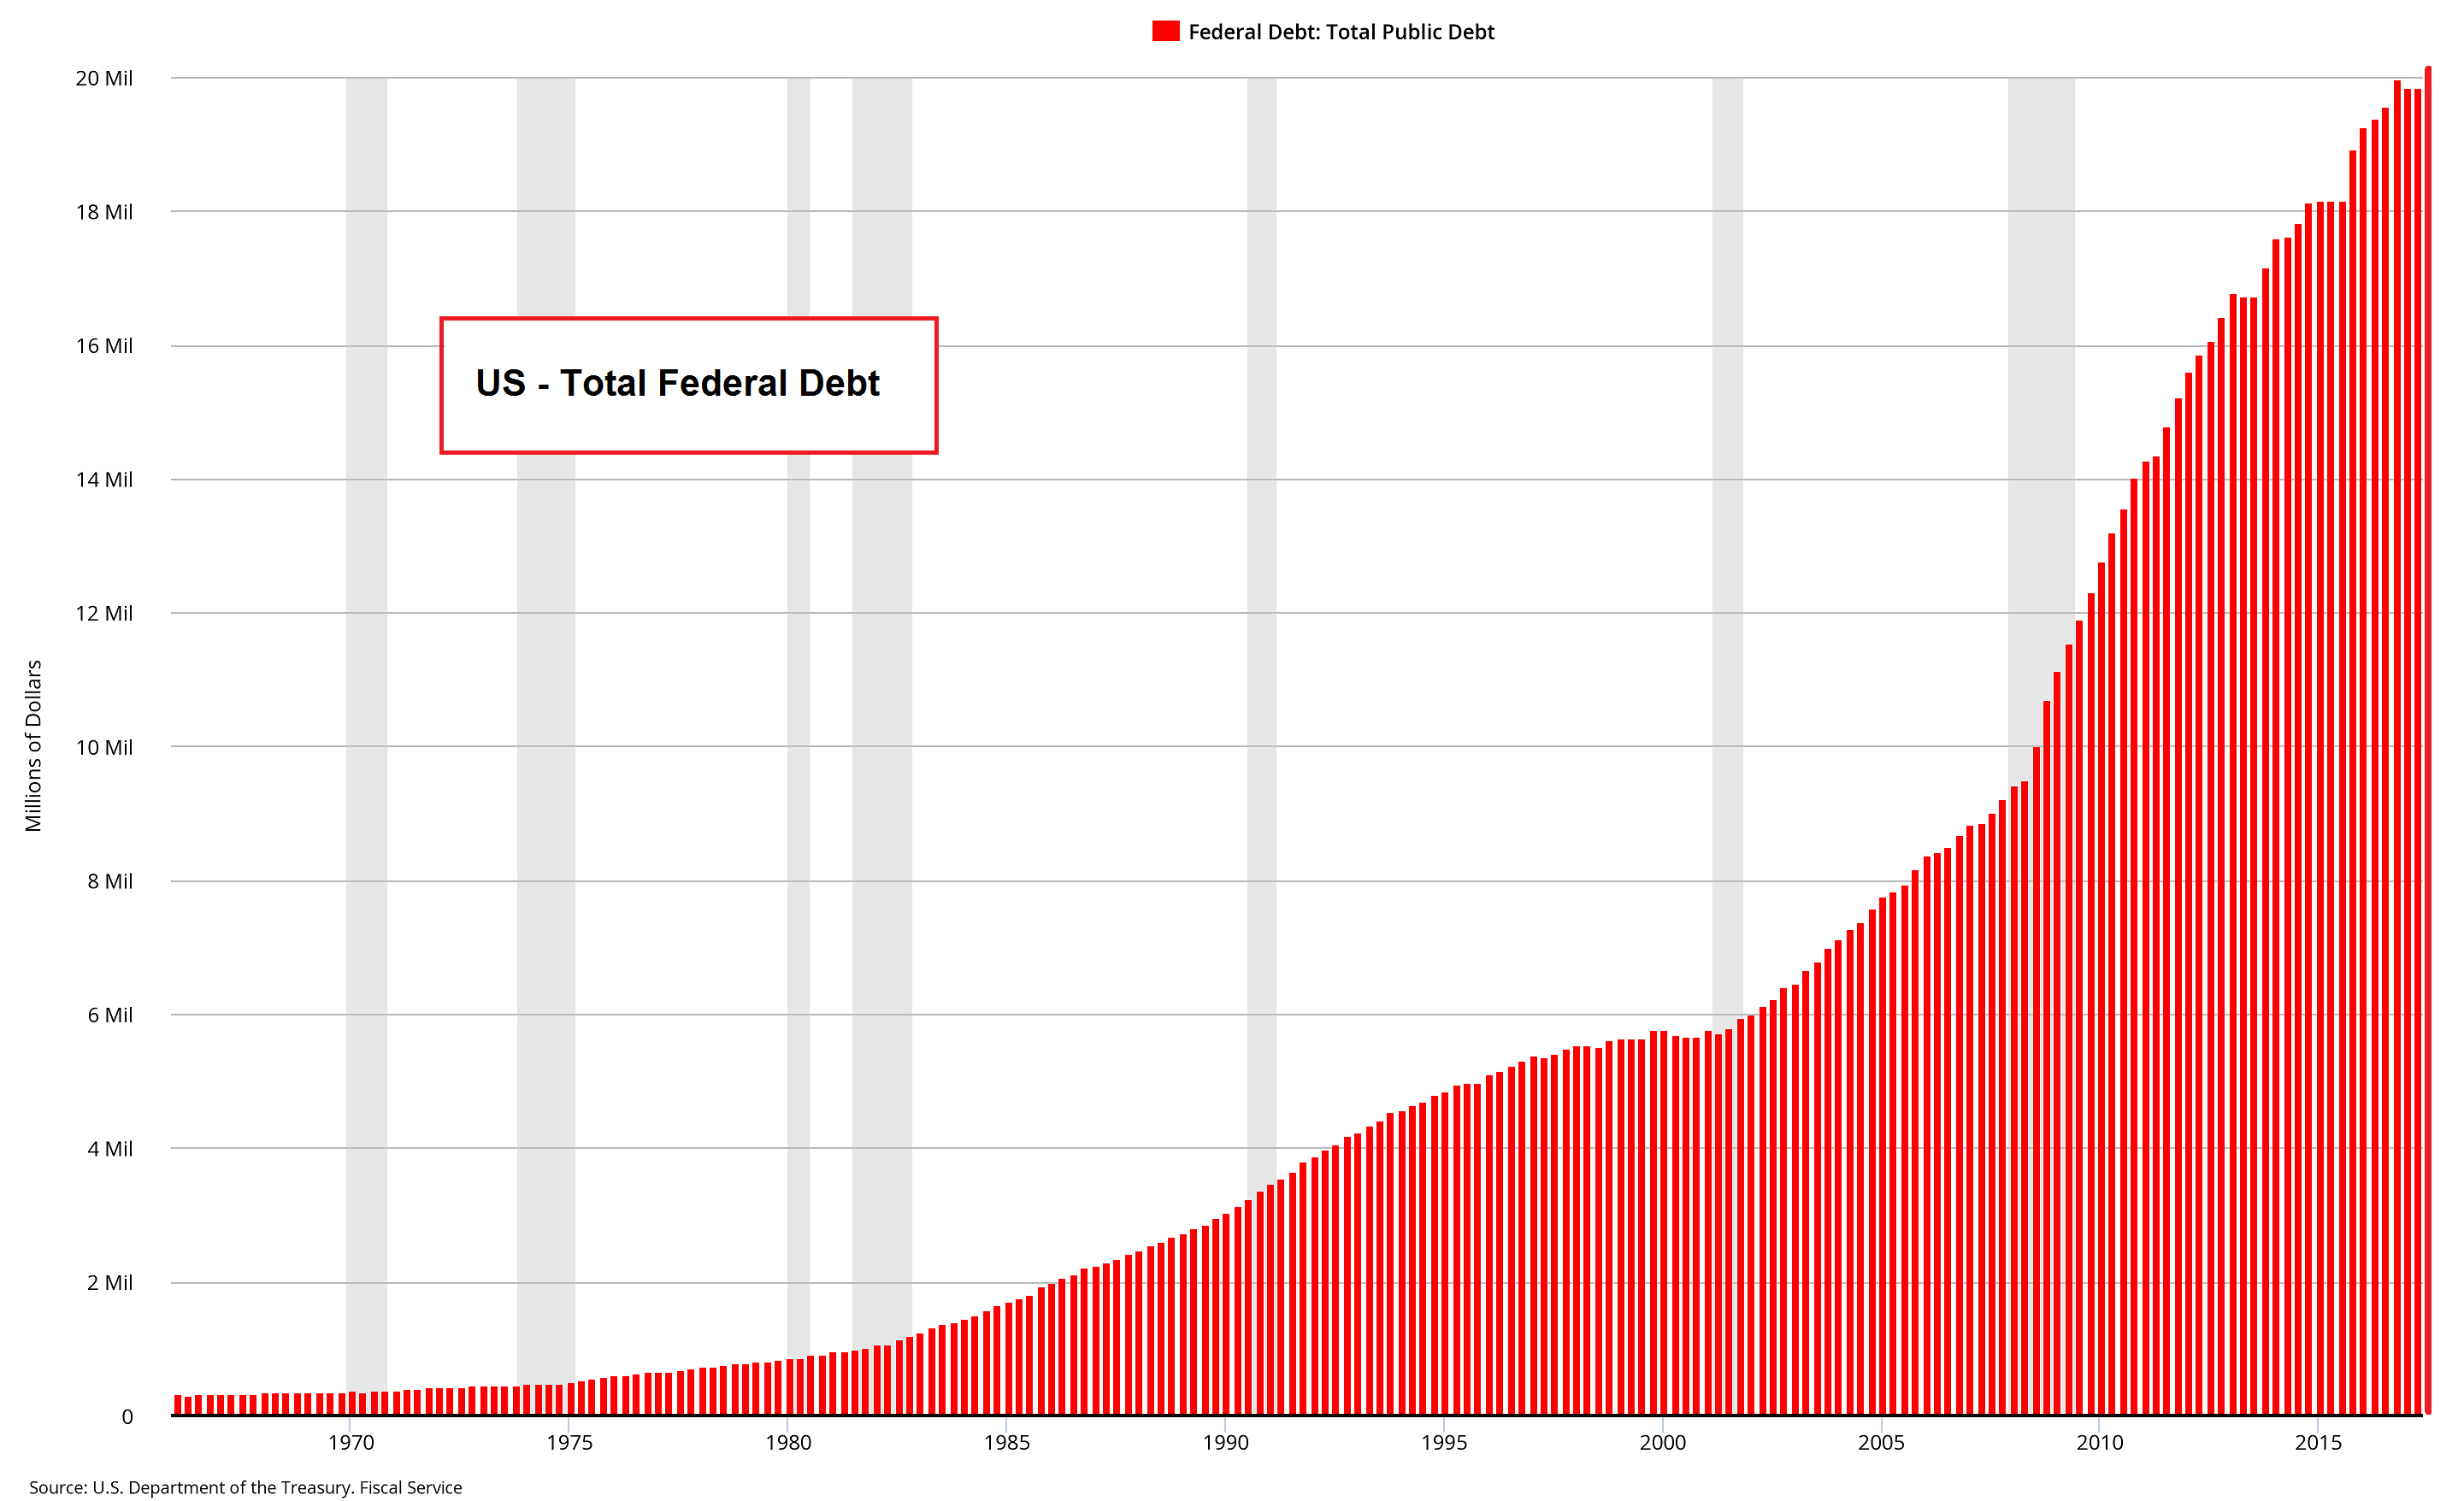 US Total Federal Debt, 1970 - 2015